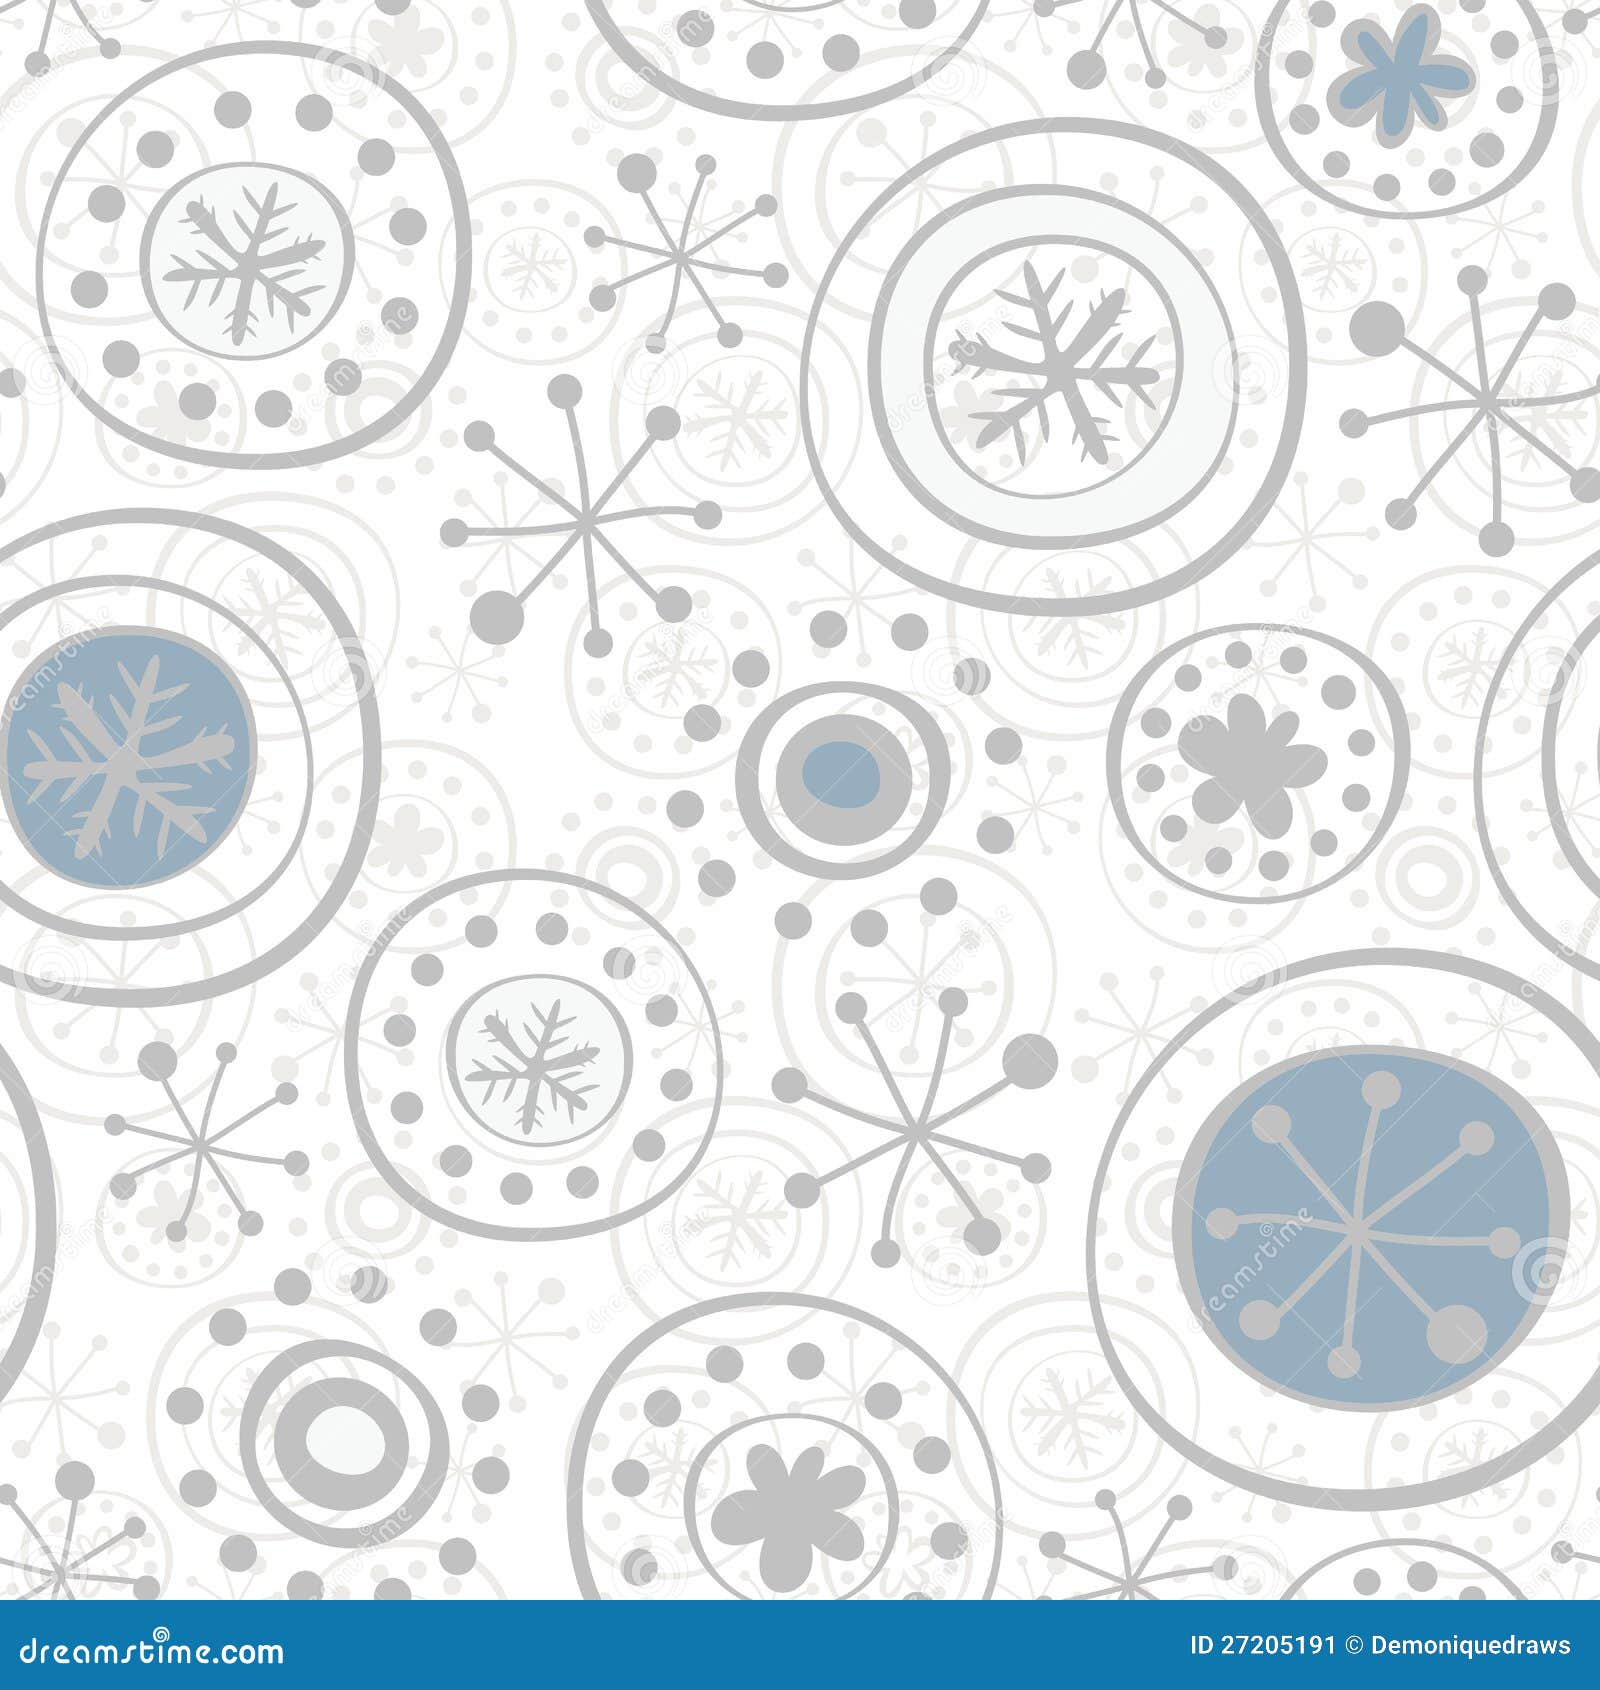 γκρίζα snowflakes στο λευκό. Χειμερινός τύπος λεπτής μονοχρωματικής ανασκόπησης με λεπτά snowflakes με τα αστέρια και τα σημεία στην άσπρη ανασκόπηση, με τα κόκκινα και μπλε στοιχεία, άνευ ραφής προτύπου για το έγγραφο και καρτών